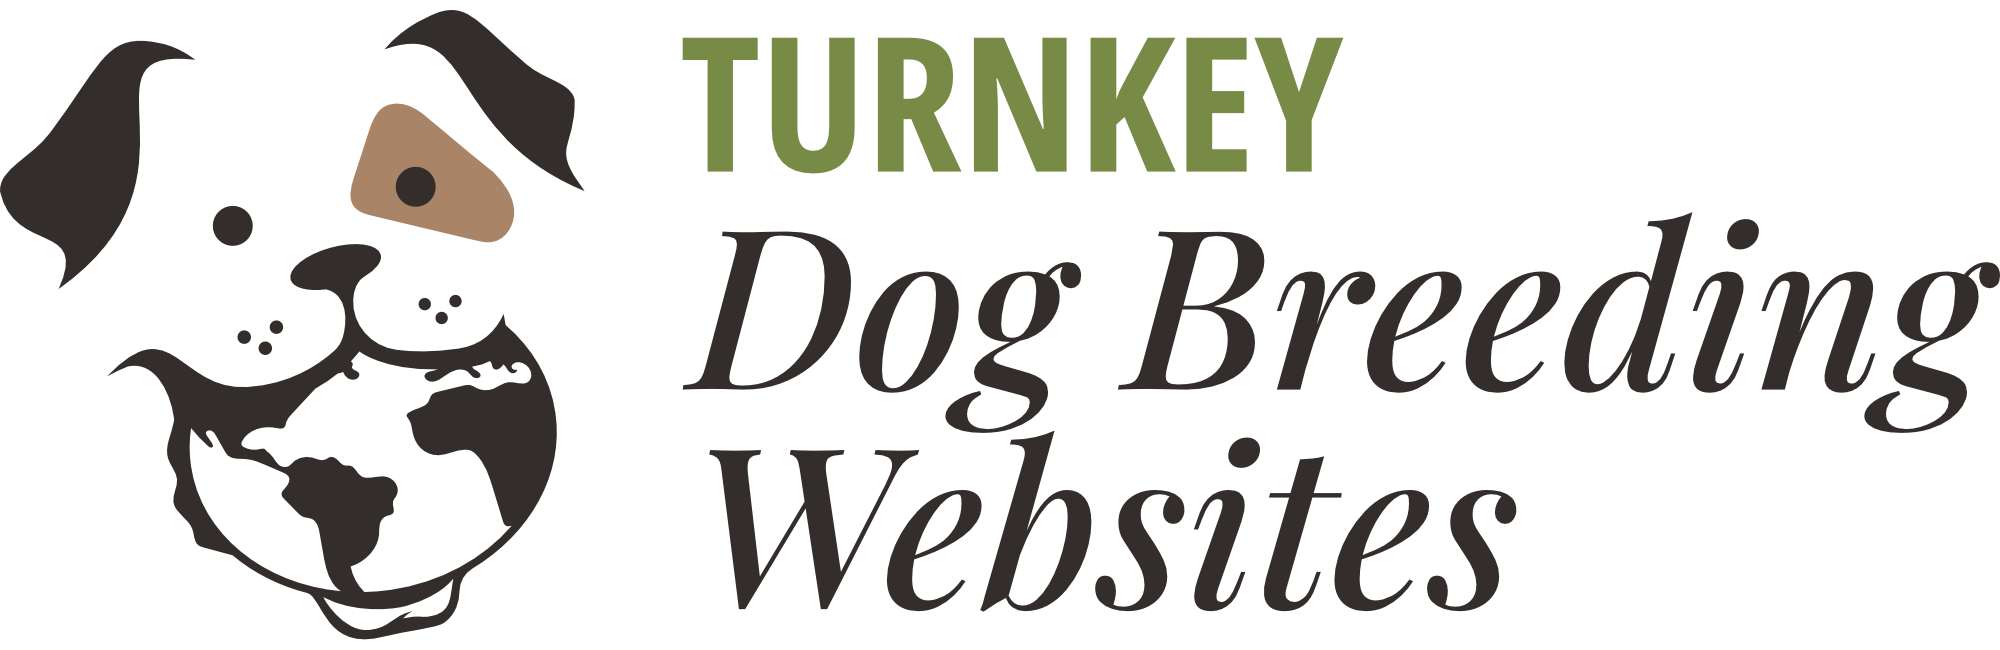 Turnkey Dog Breeding Websites review